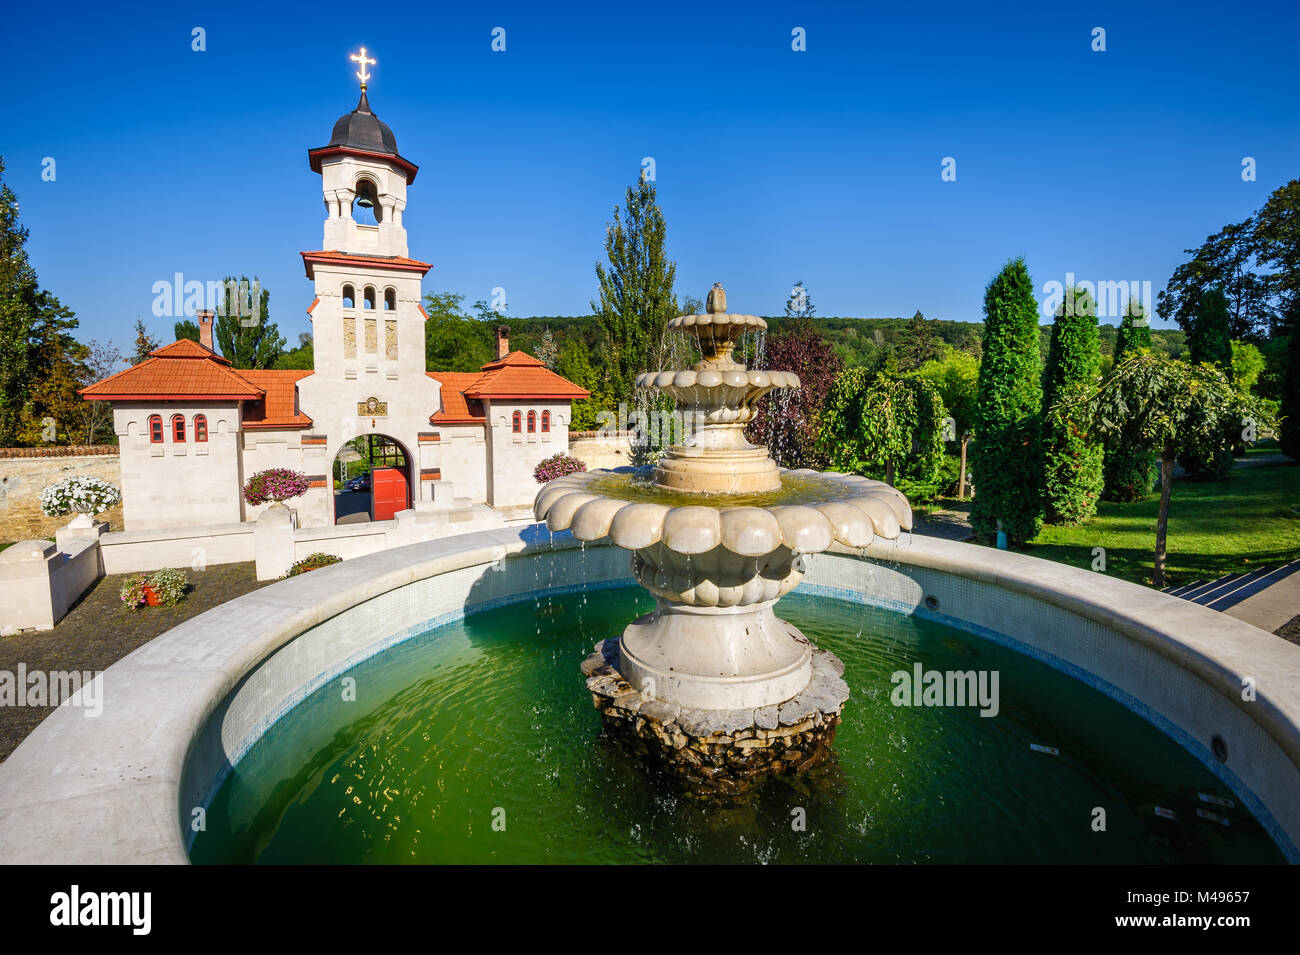 Curchi cristiano ortodosso monastero, Moldavia Foto Stock